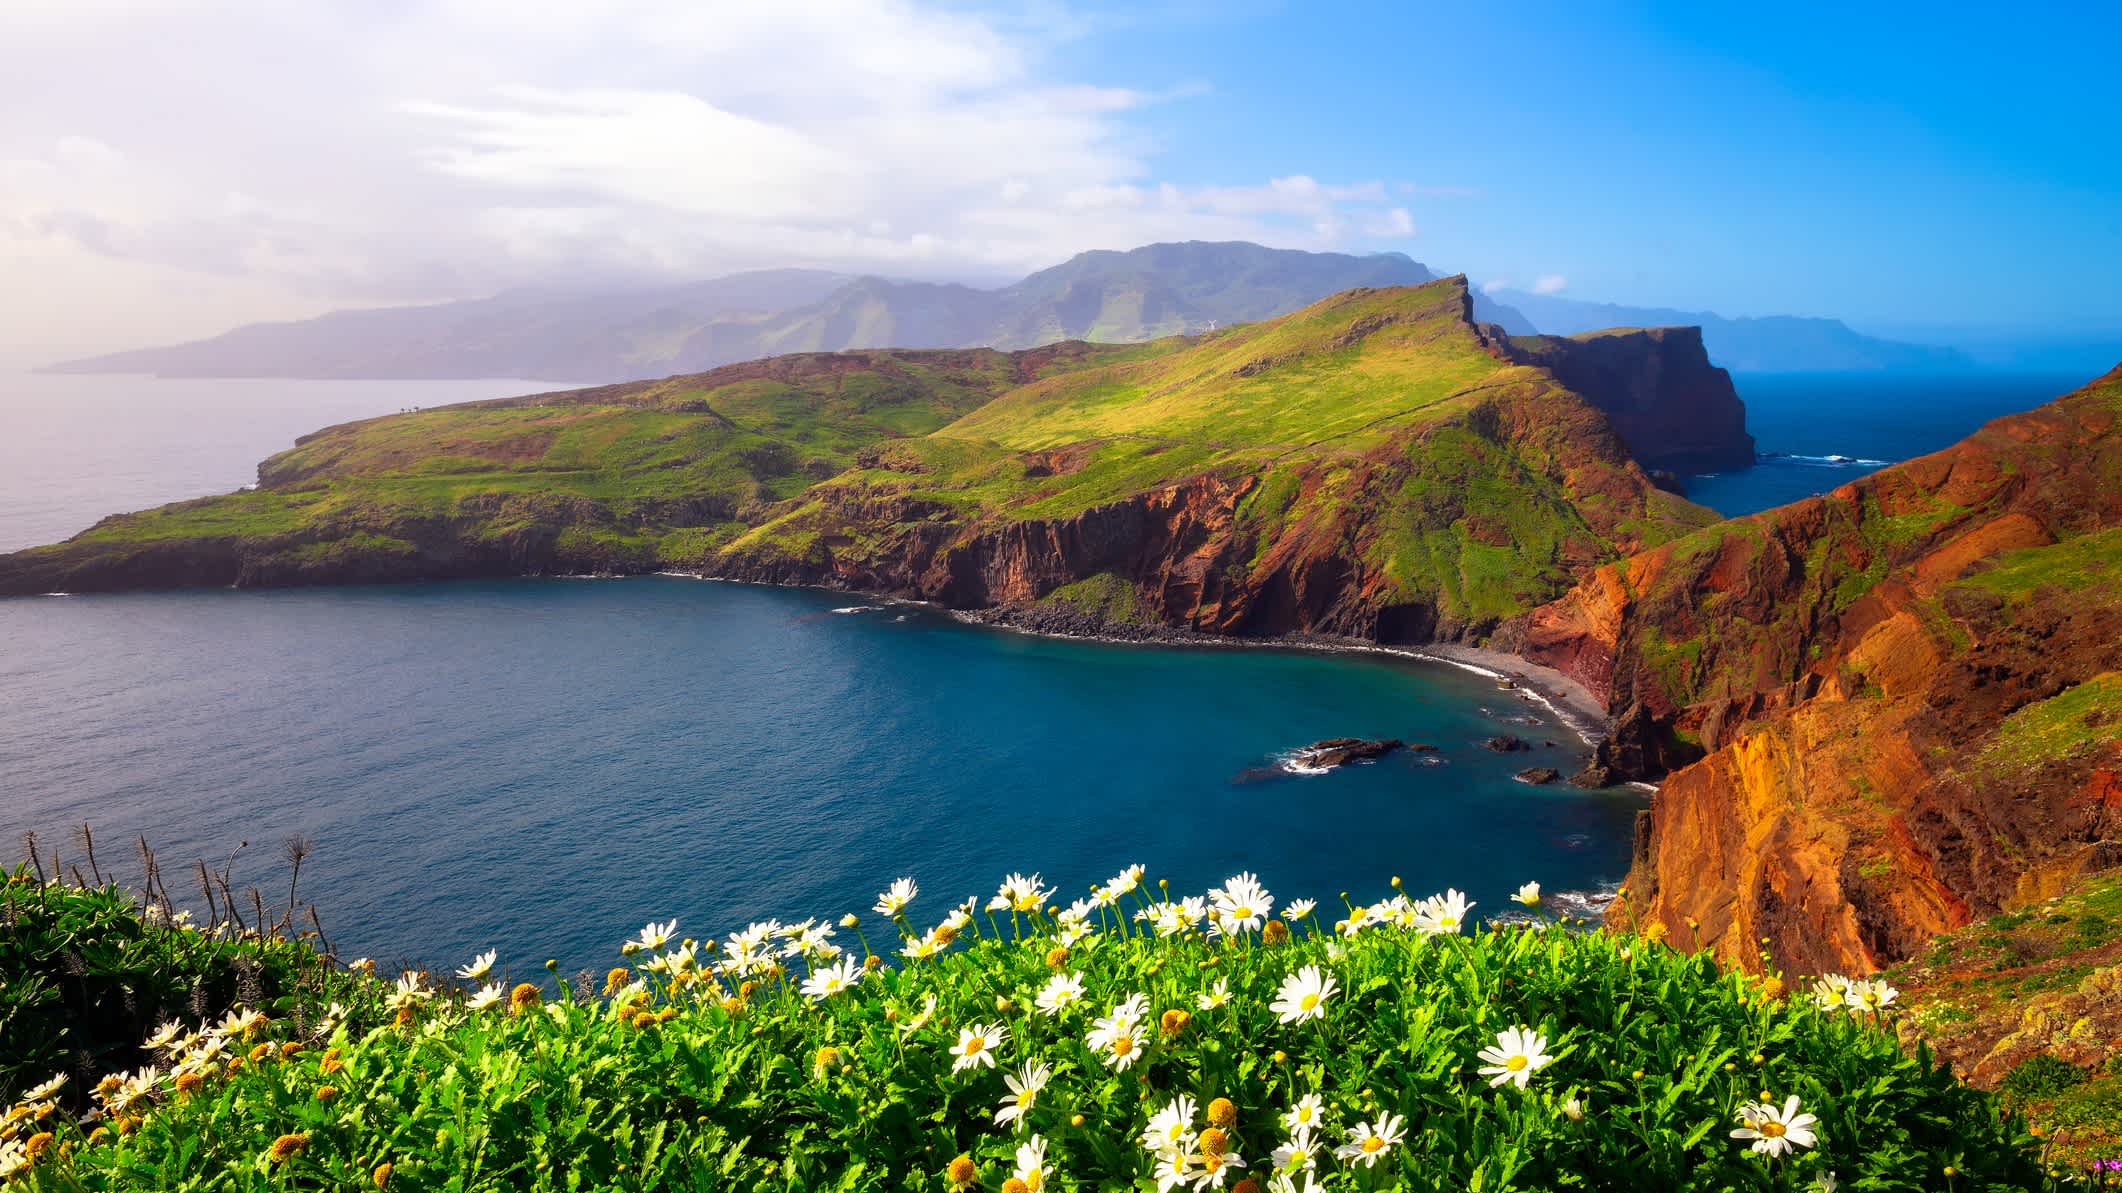 Ponta de Sao Lourenco Halbinsel mit schönen Blumen im Vordergrund auf den Madeira-Inseln, Portugal.

